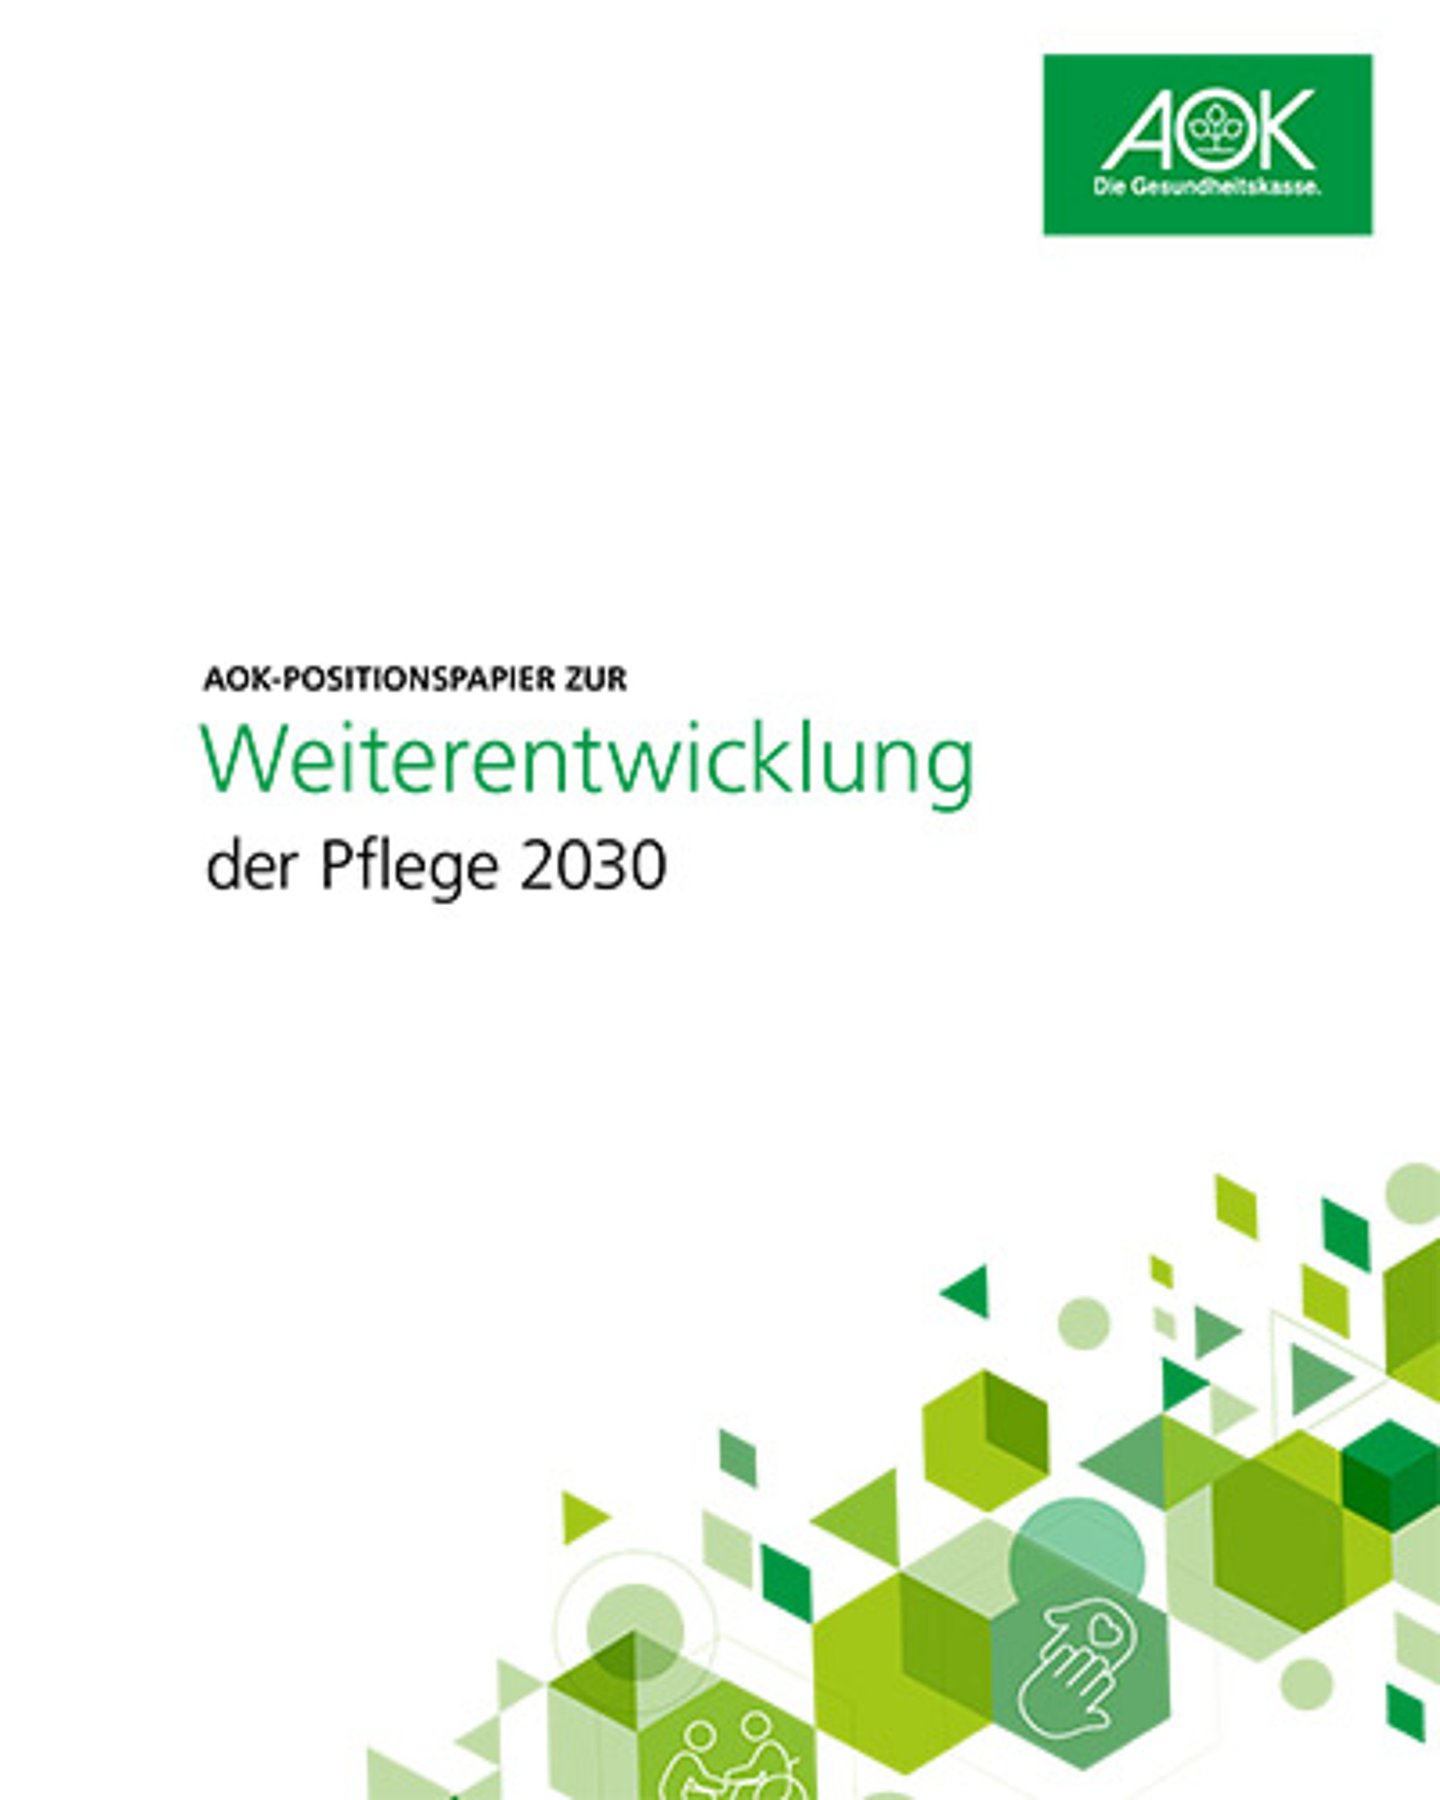 Titelbild: AOK-Positionspapier zur Weiterentwicklung der Pflege 2030